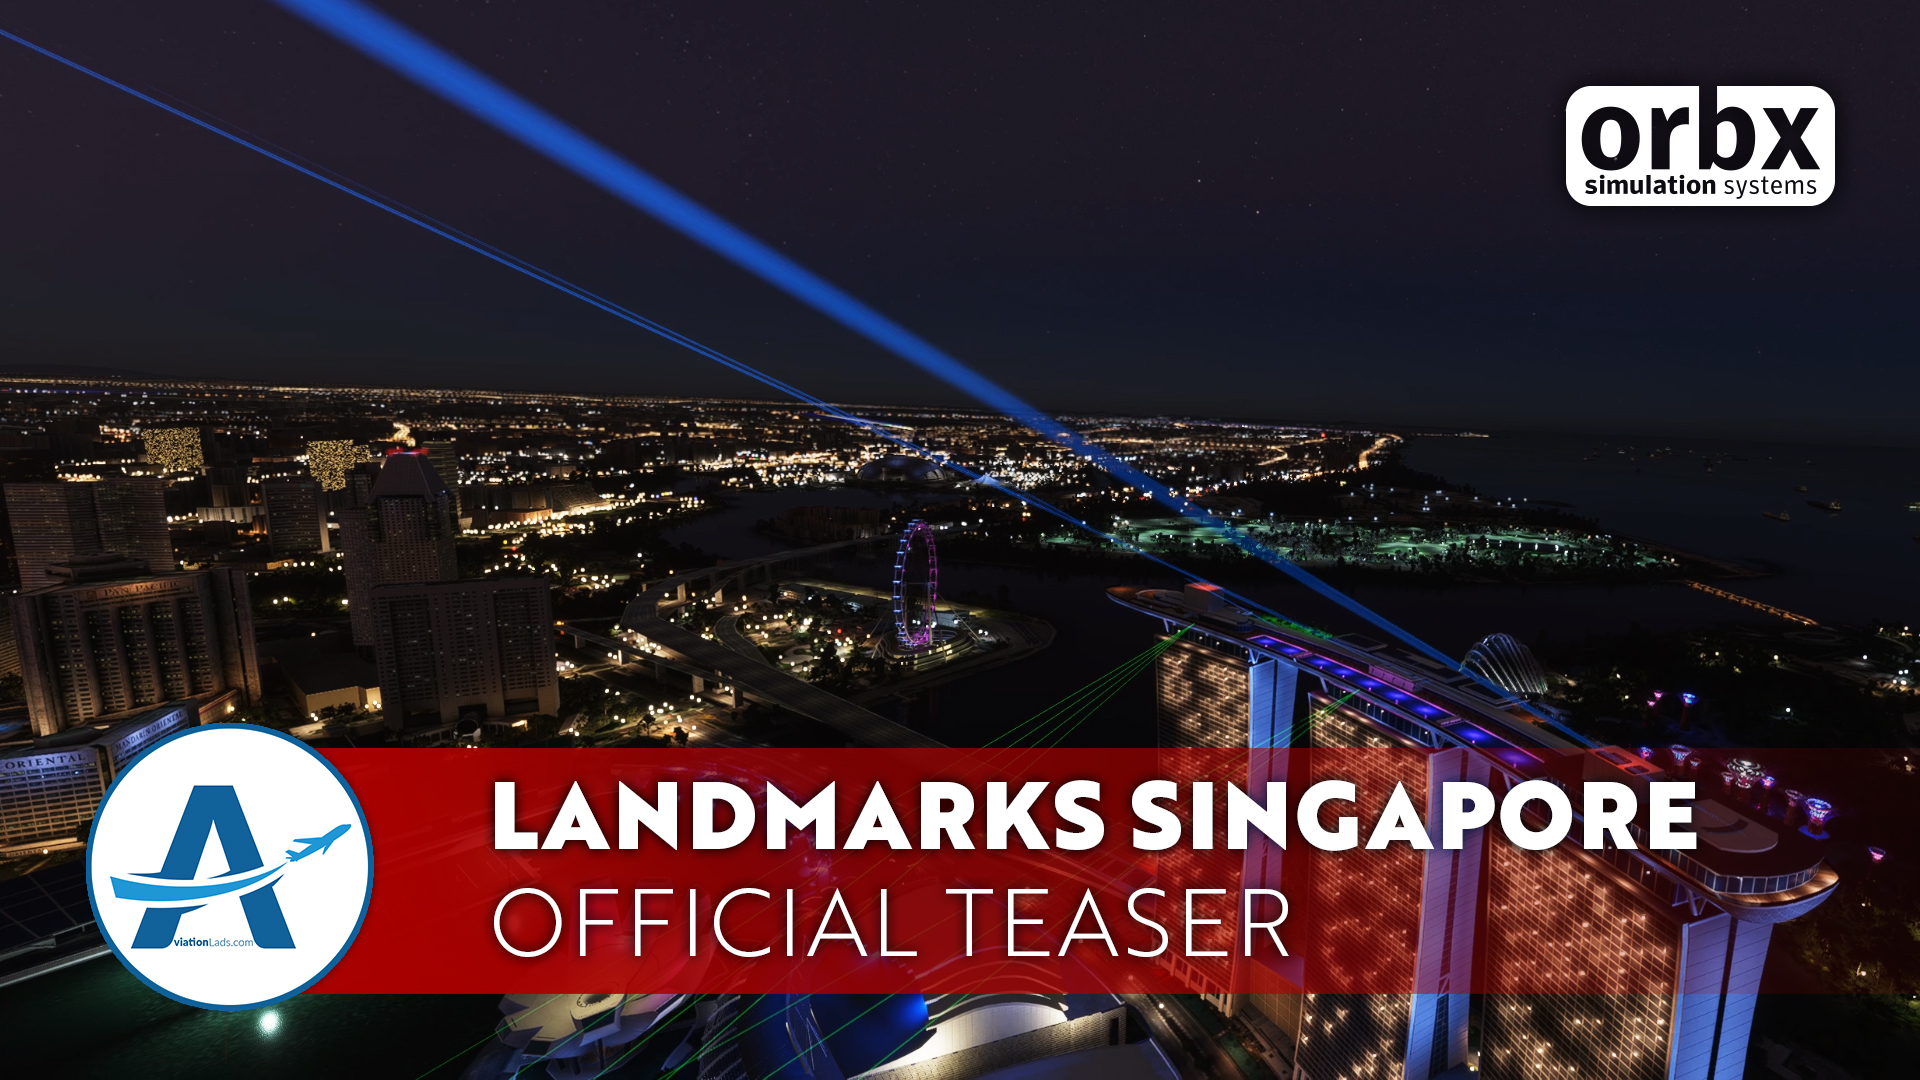 [TEASER] Orbx Landmarks Singapore